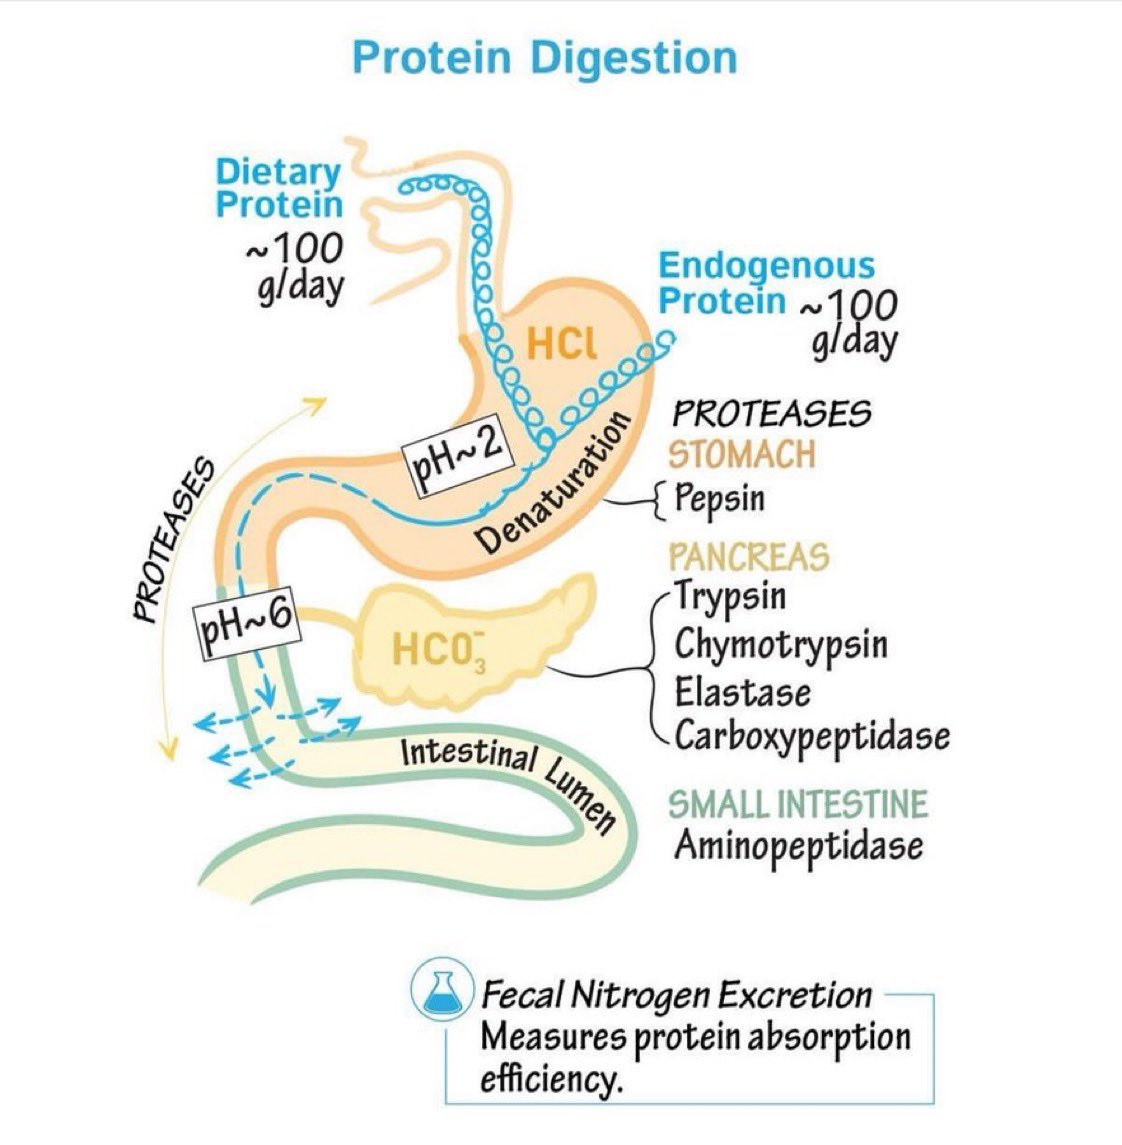 Protein Digestion @Paul_Wischmeyer #MedEd #Protein #FOAMed